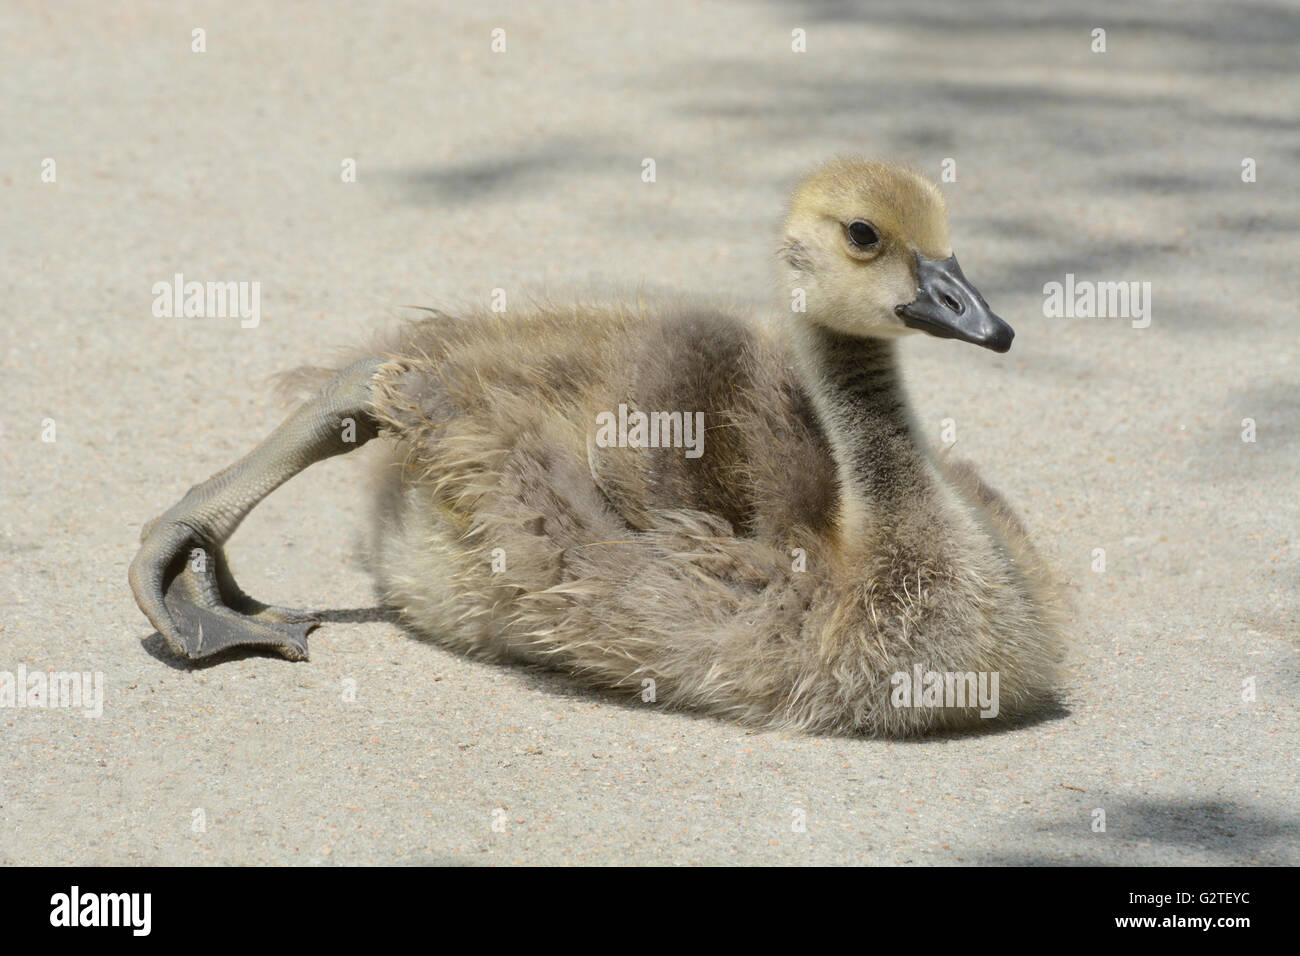 Canada Goose gosling allungamento della gamba mentre si prende il sole sul marciapiede a caldo Foto Stock